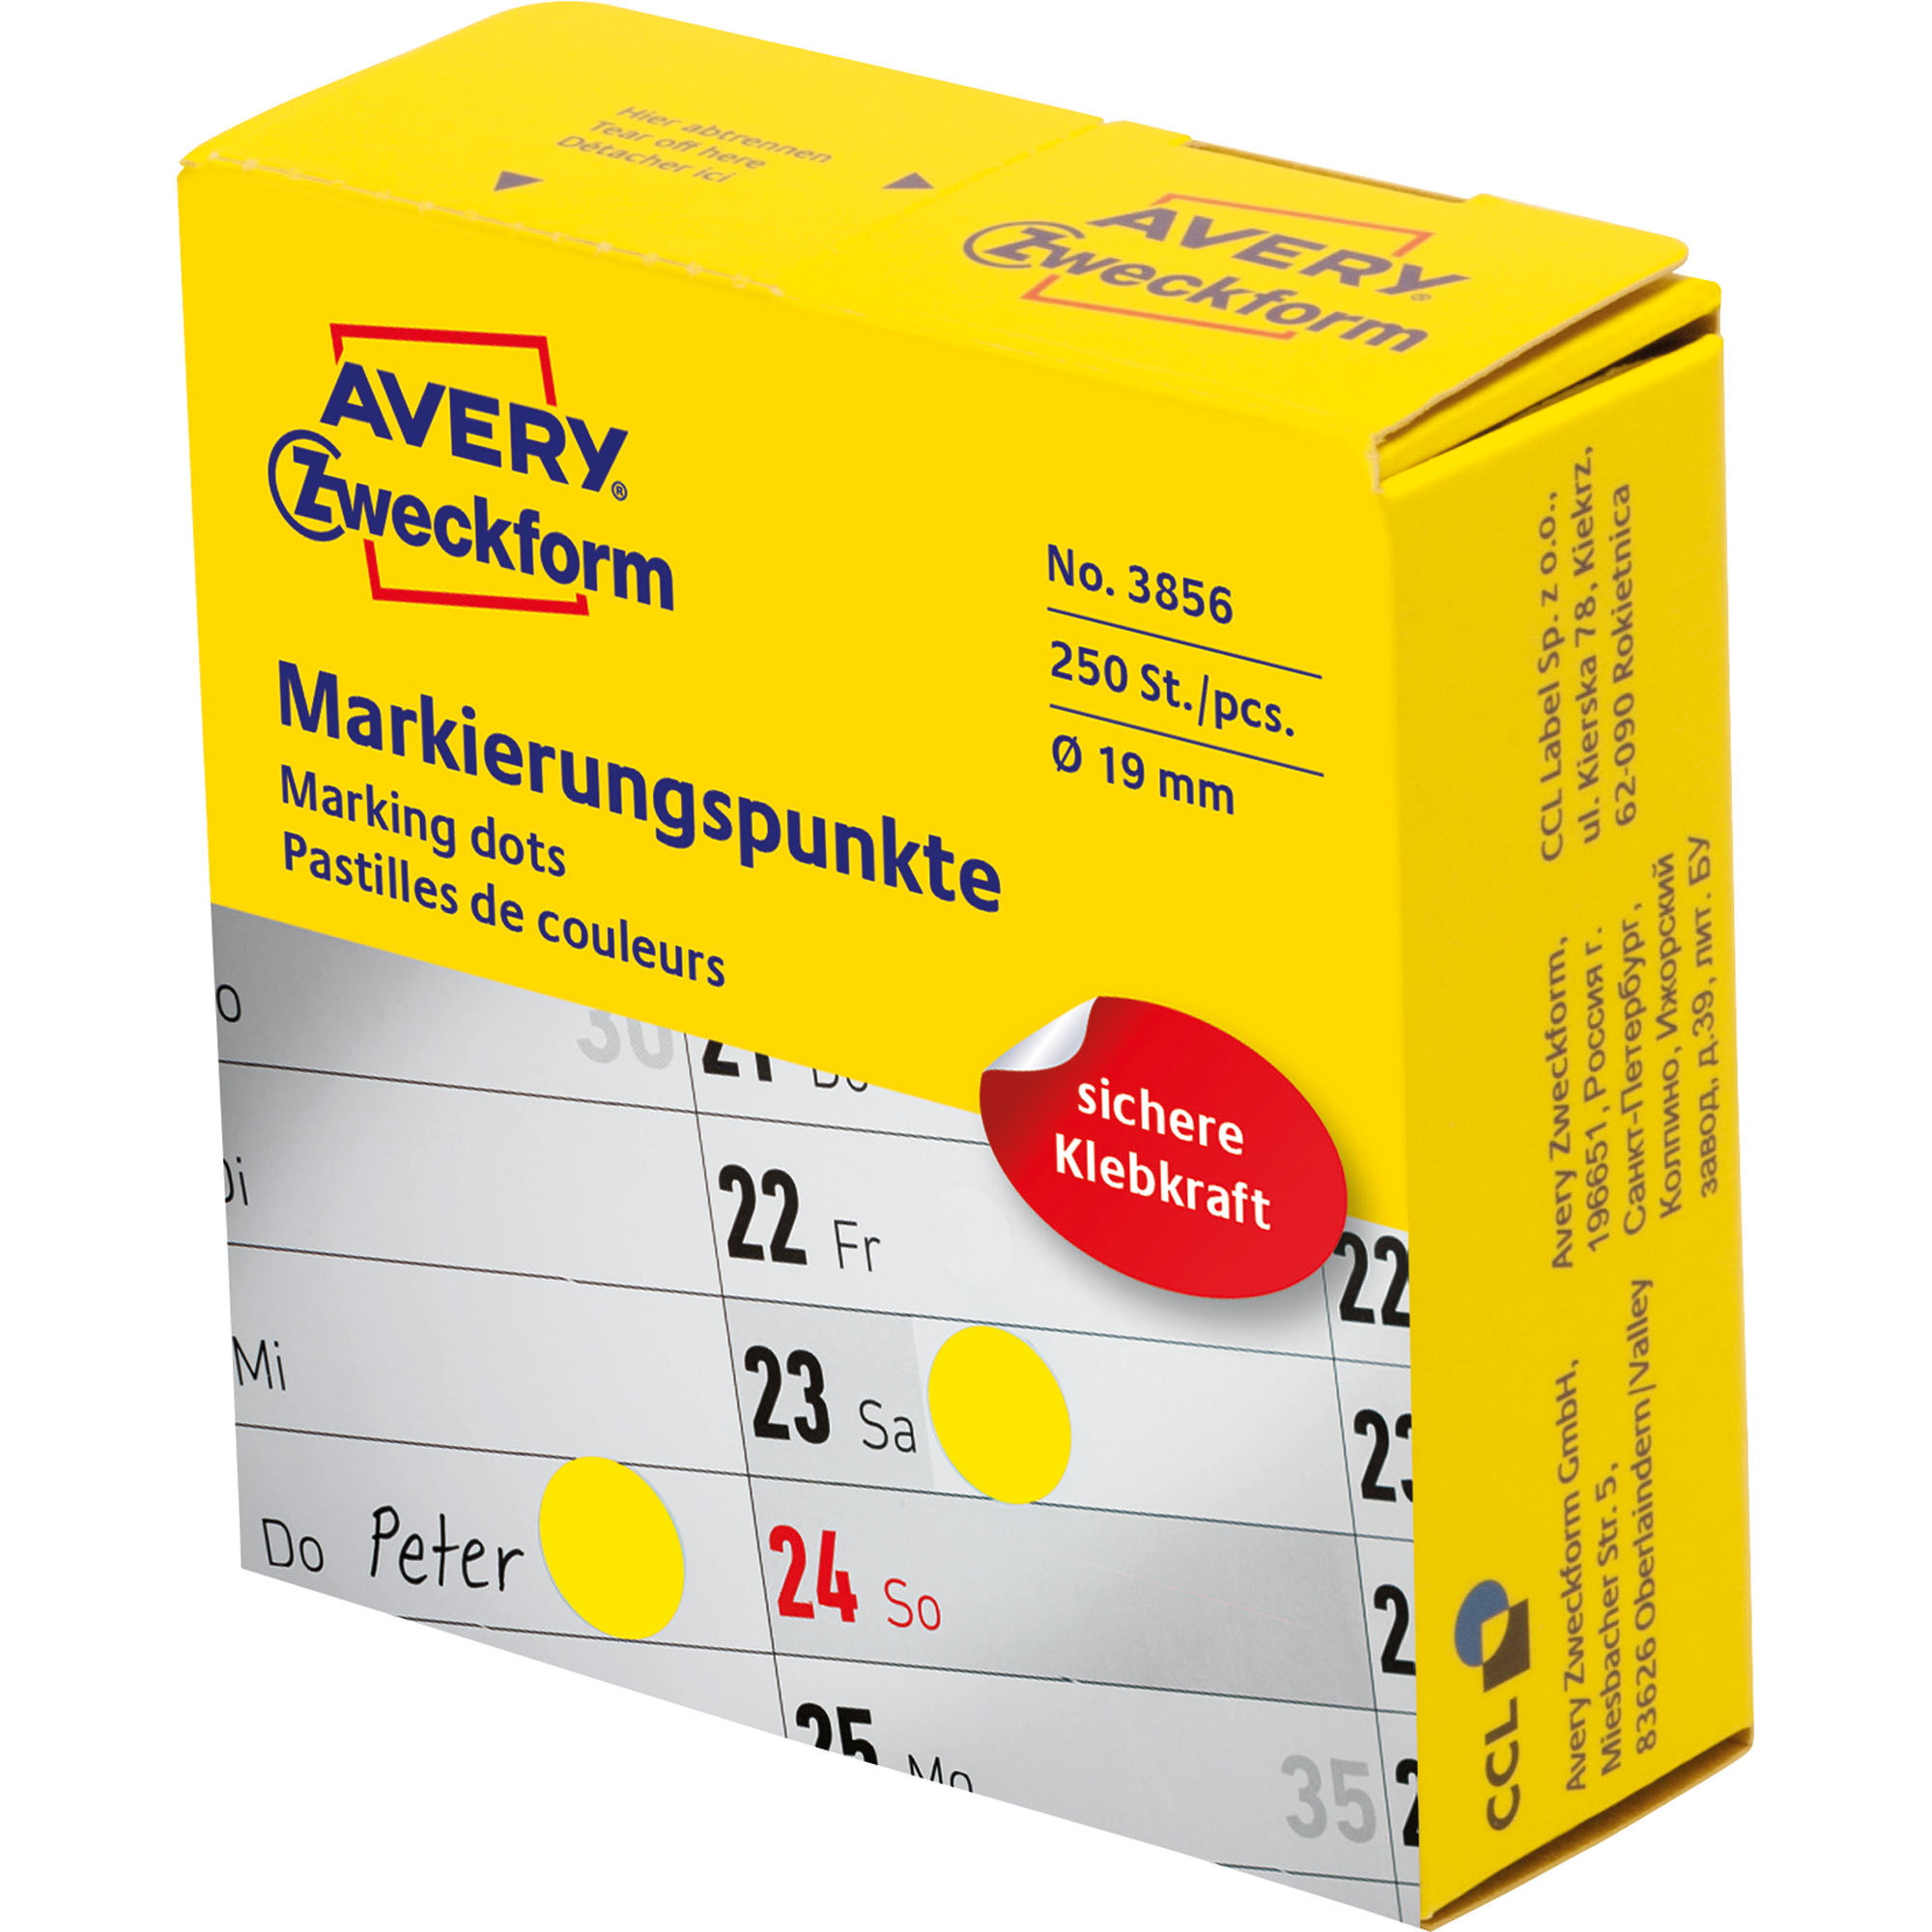 Avery Zweckform Markierungspunkt 19 mm gelb